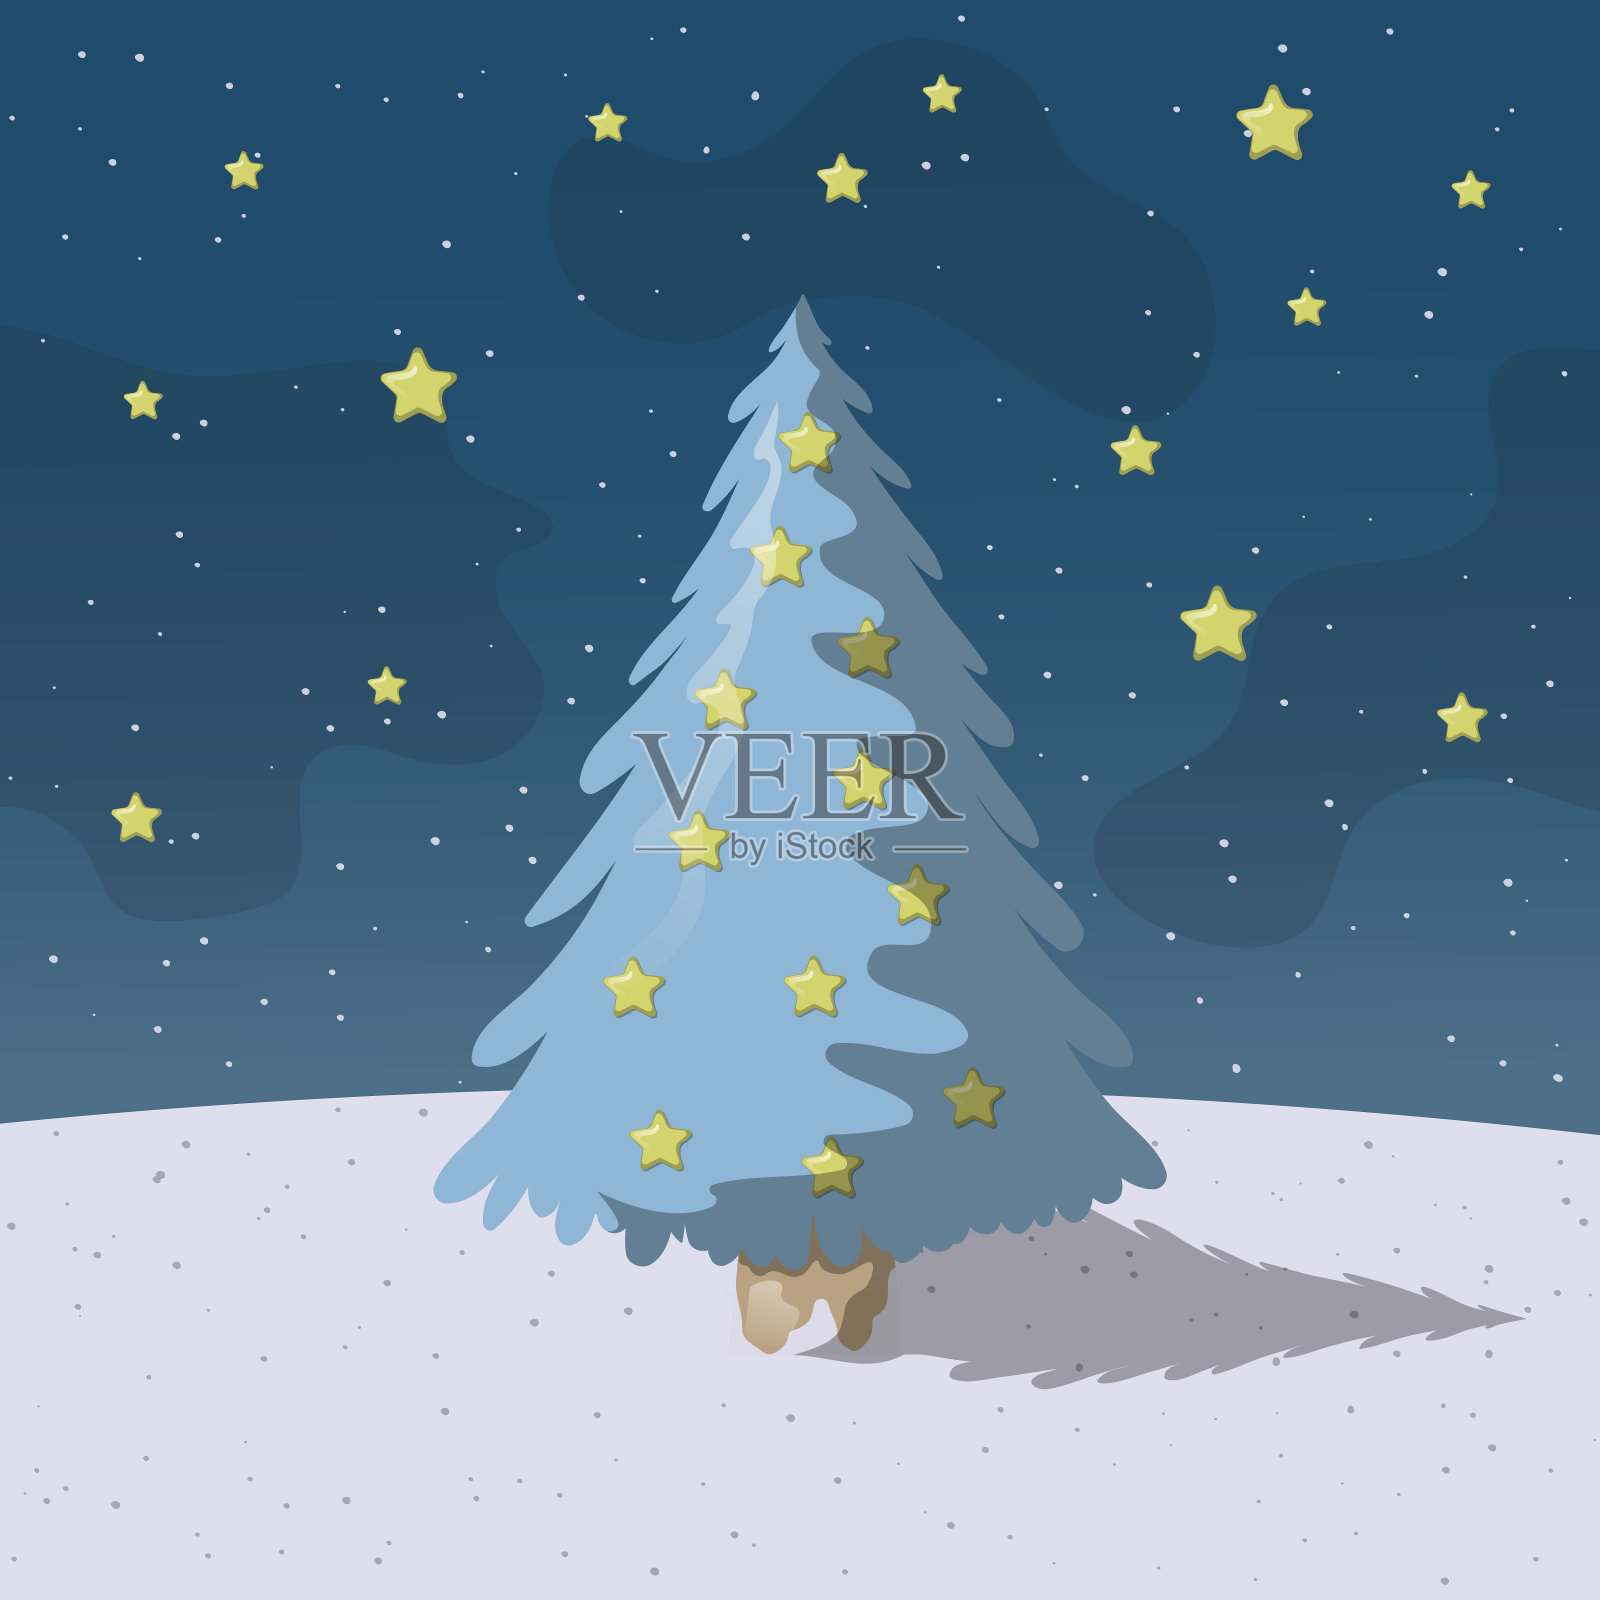 圣诞邀请卡模板与圣诞树和夜晚的星星。矢量隔离边界与节日元素和降雪。庆祝诺埃尔的节日横幅。插画图片素材